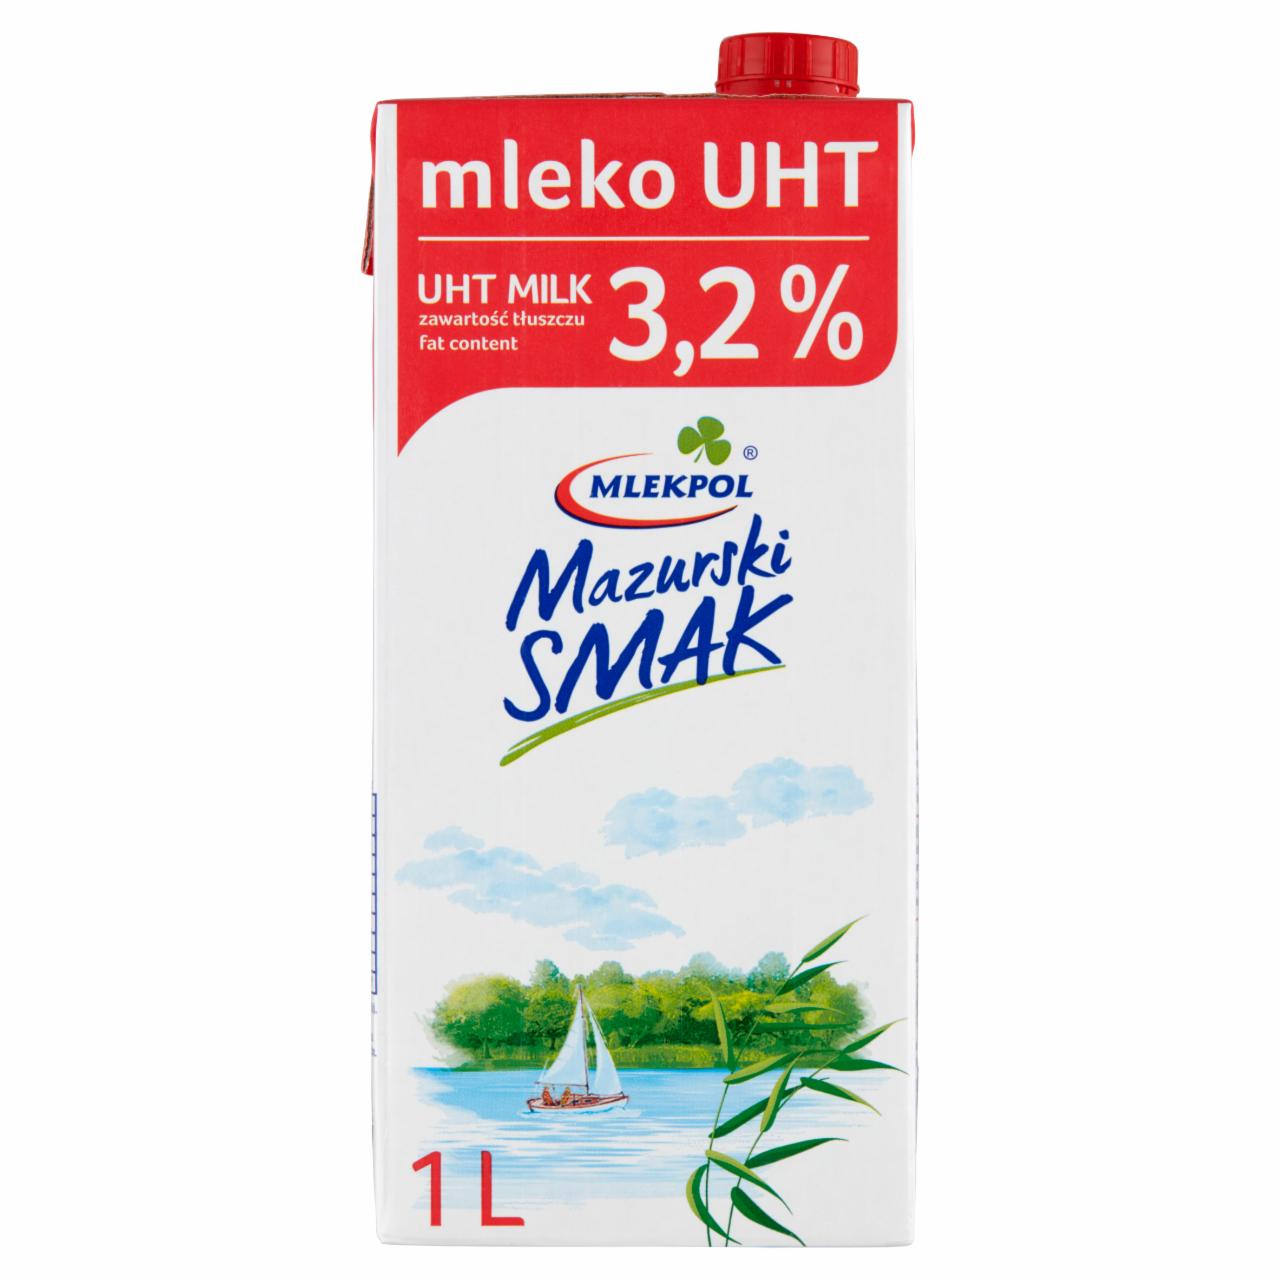 Fotografie - Mlekpol Mazurski Smak Mleko 3.2%